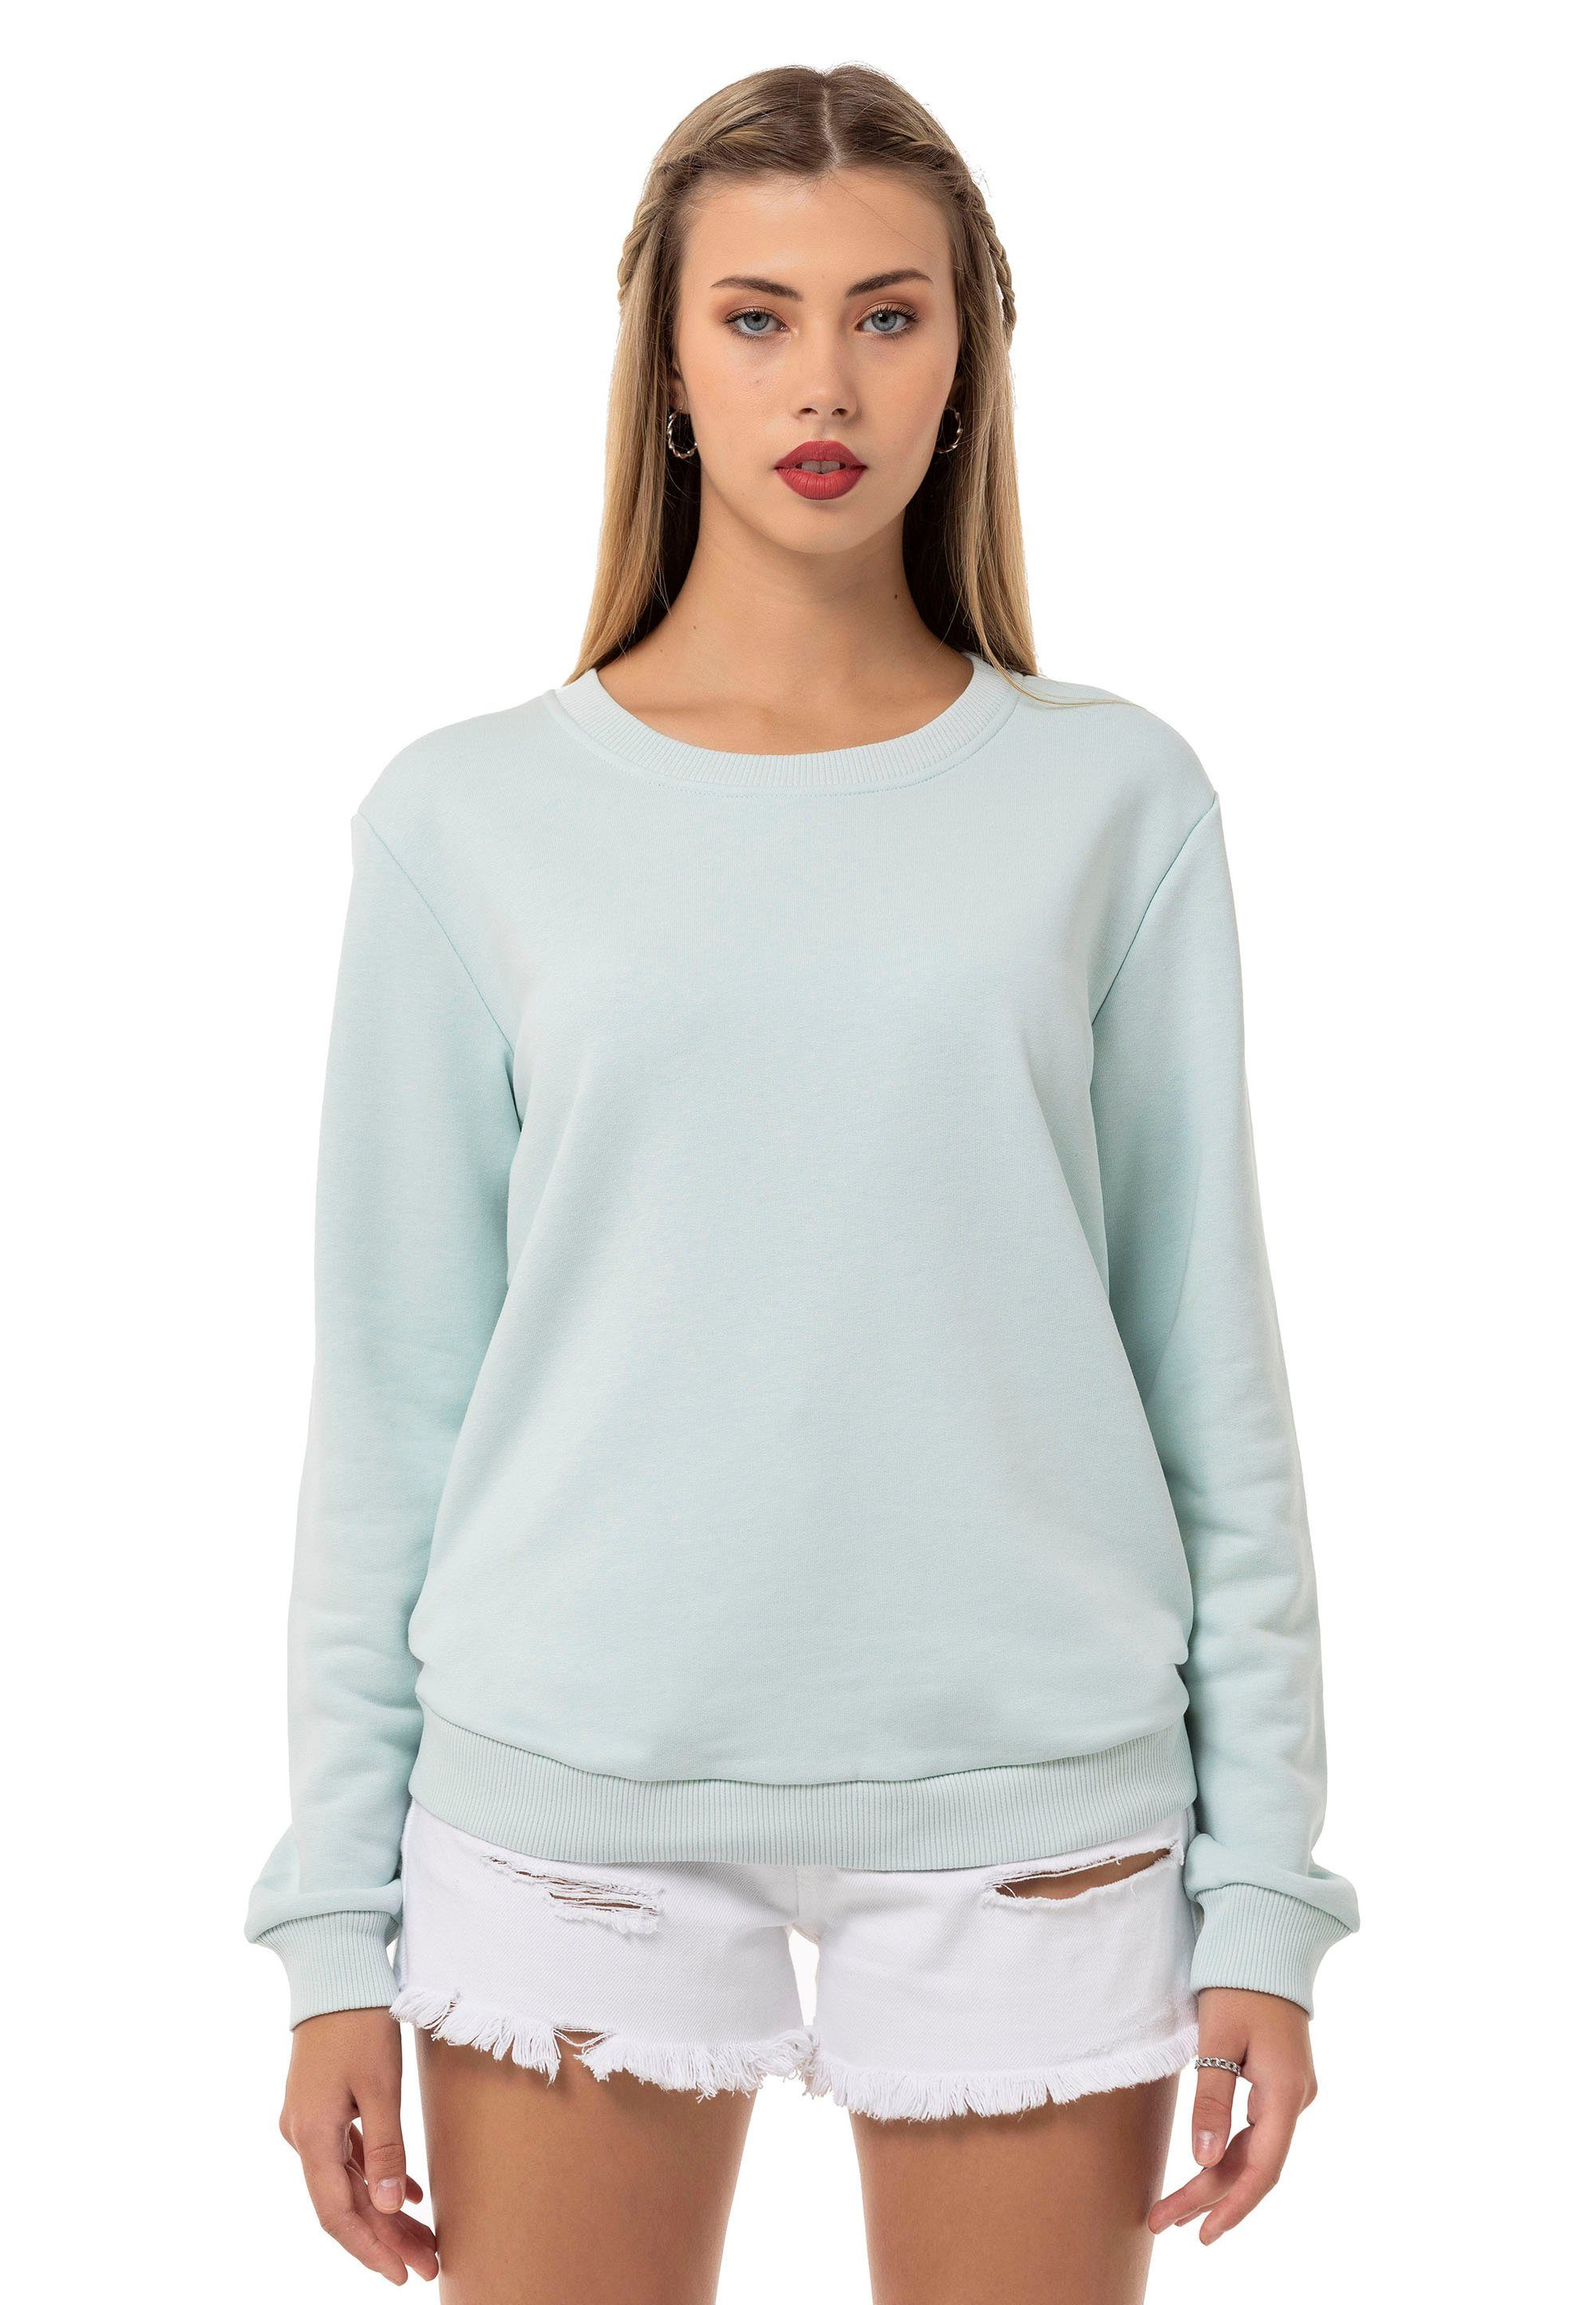 Mint Premium RedBridge Qualität Rundhals Pullover Sweatshirt